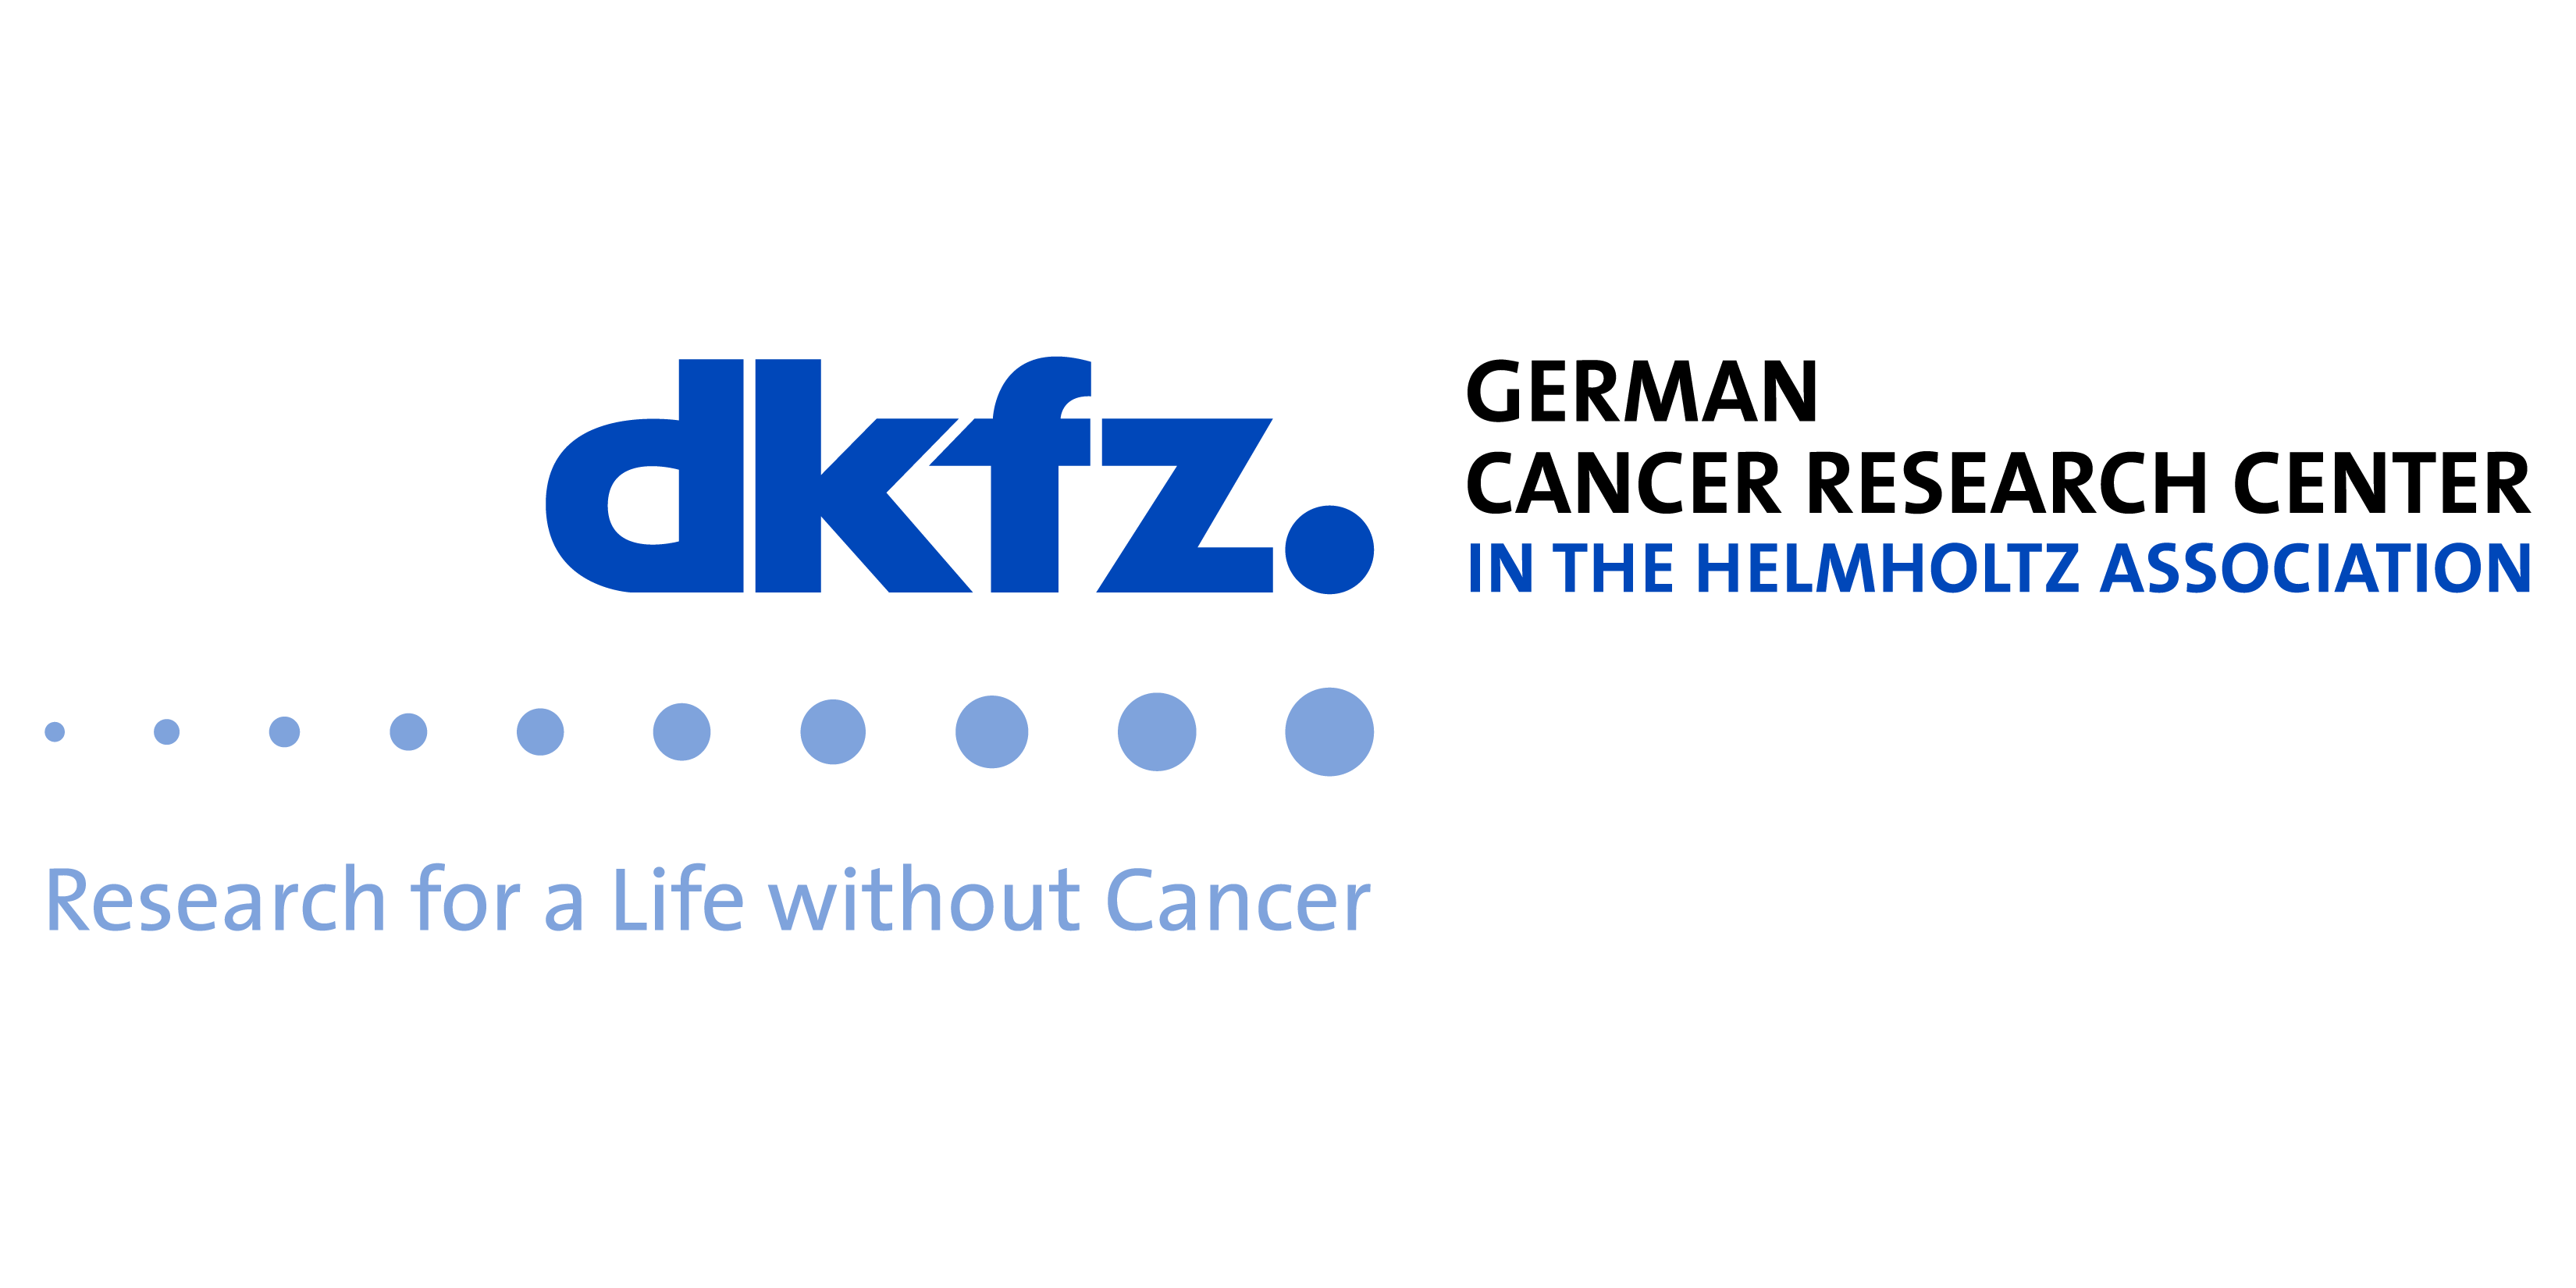 DKFZ_Logo-Research_en_Black-Blue_sRGB